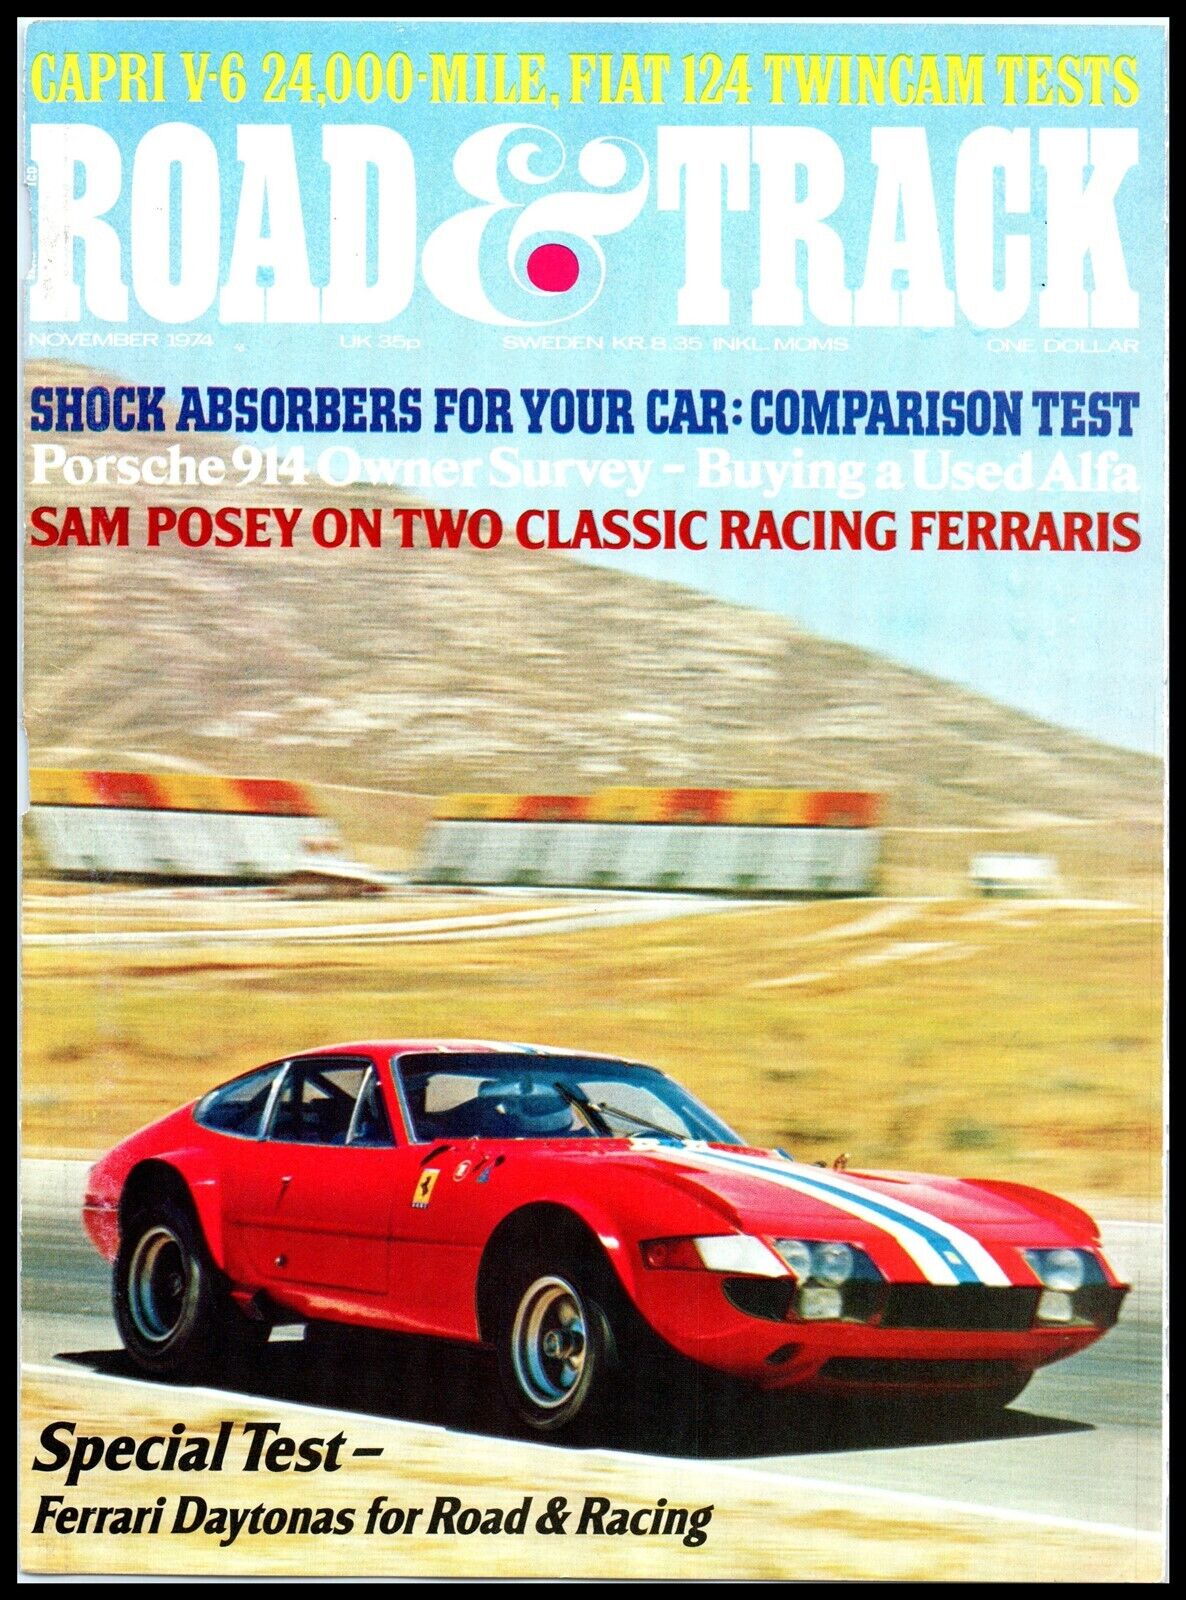 November 1974 Magazine Car Print / Cover - Road & Track, Ferrari Daytona A7